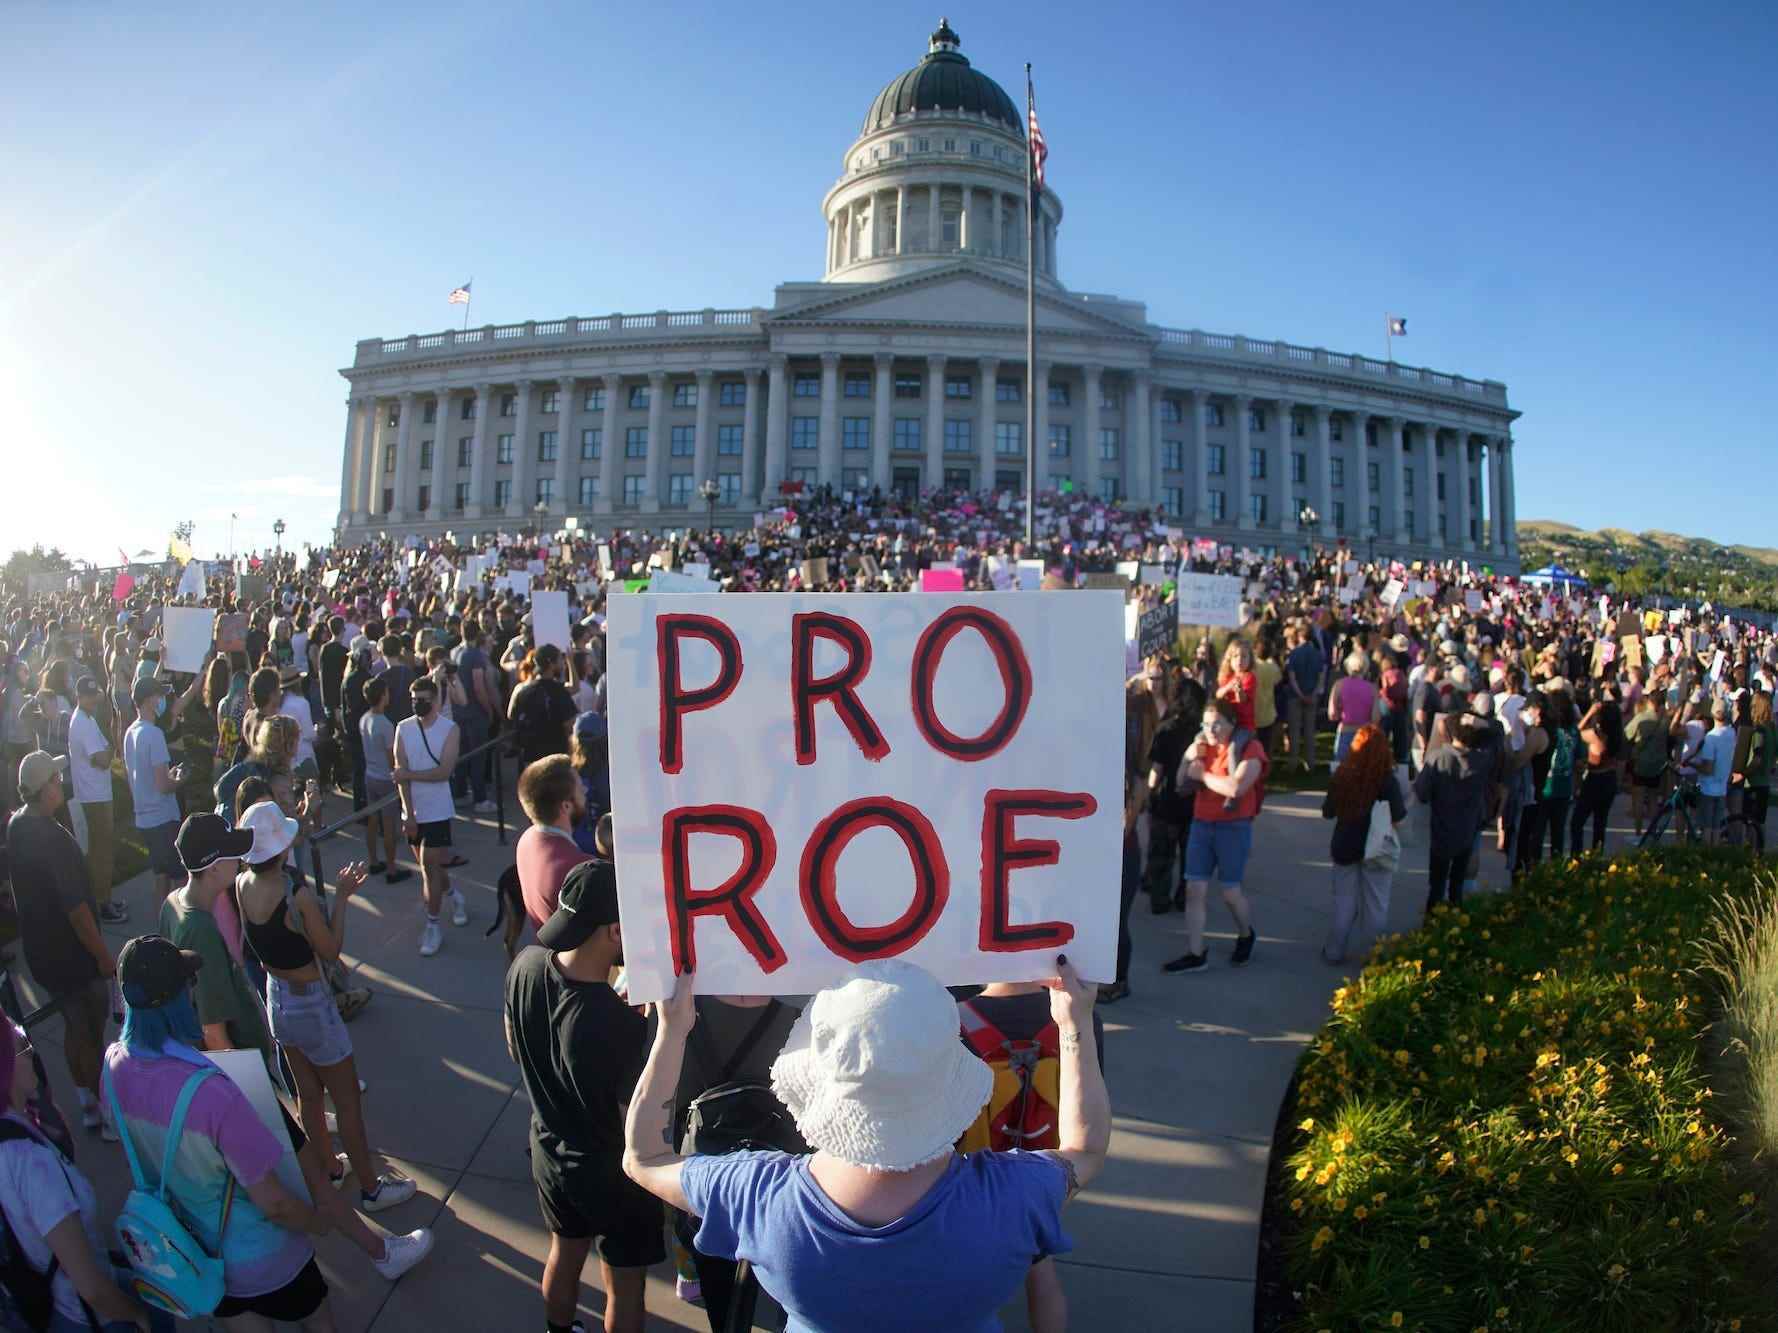 Menschen nehmen an einem Protest gegen Abtreibungsrechte im Utah State Capitol in Salt Lake City teil, nachdem der Oberste Gerichtshof Roe gegen Wade am 24. Juni 2022 aufgehoben hatte. Ein Richter in Utah blockierte am Montag, den 27. Juni 2022, vorübergehend die nahezu vollständige Abtreibung dieses Staates Verbot, nachdem Planned Parenthood dort ein Auslösegesetz angefochten hat, das enge Ausnahmen enthält